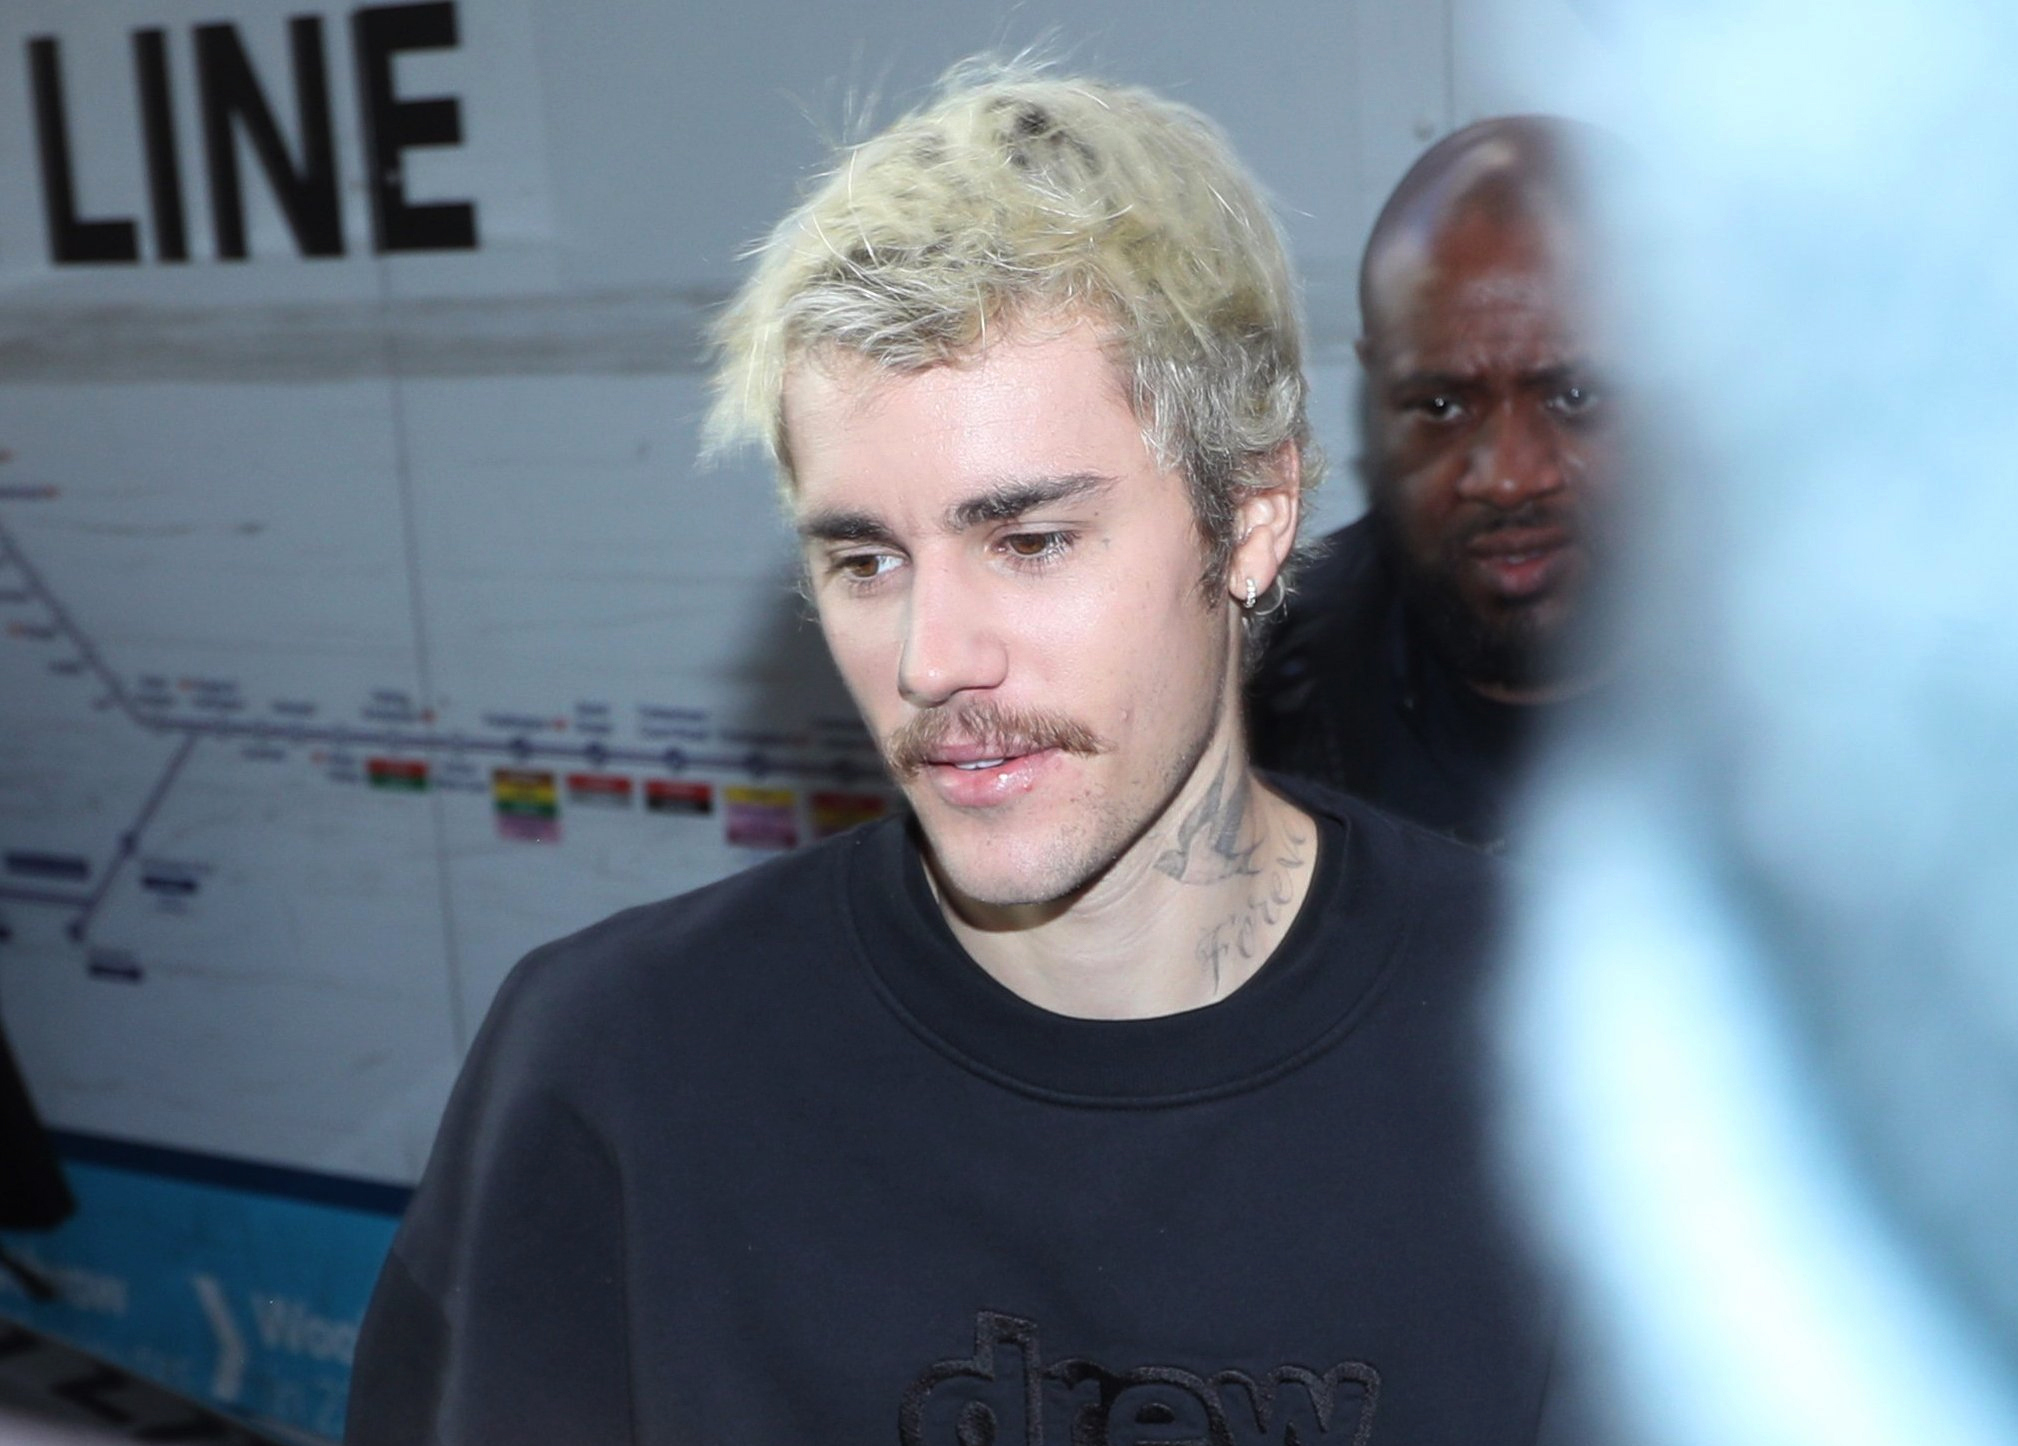 Justin Bieber, kanadischer Sänger und Popstar, kommt im Nachtclub "Tape" zur Vorstellung seines Albums «Changes» an. (Zu dpa "Bieber enttäuscht über Grammy-Nominierung: «Changes» ist doch R&B") +++ dpa-Bildfunk +++